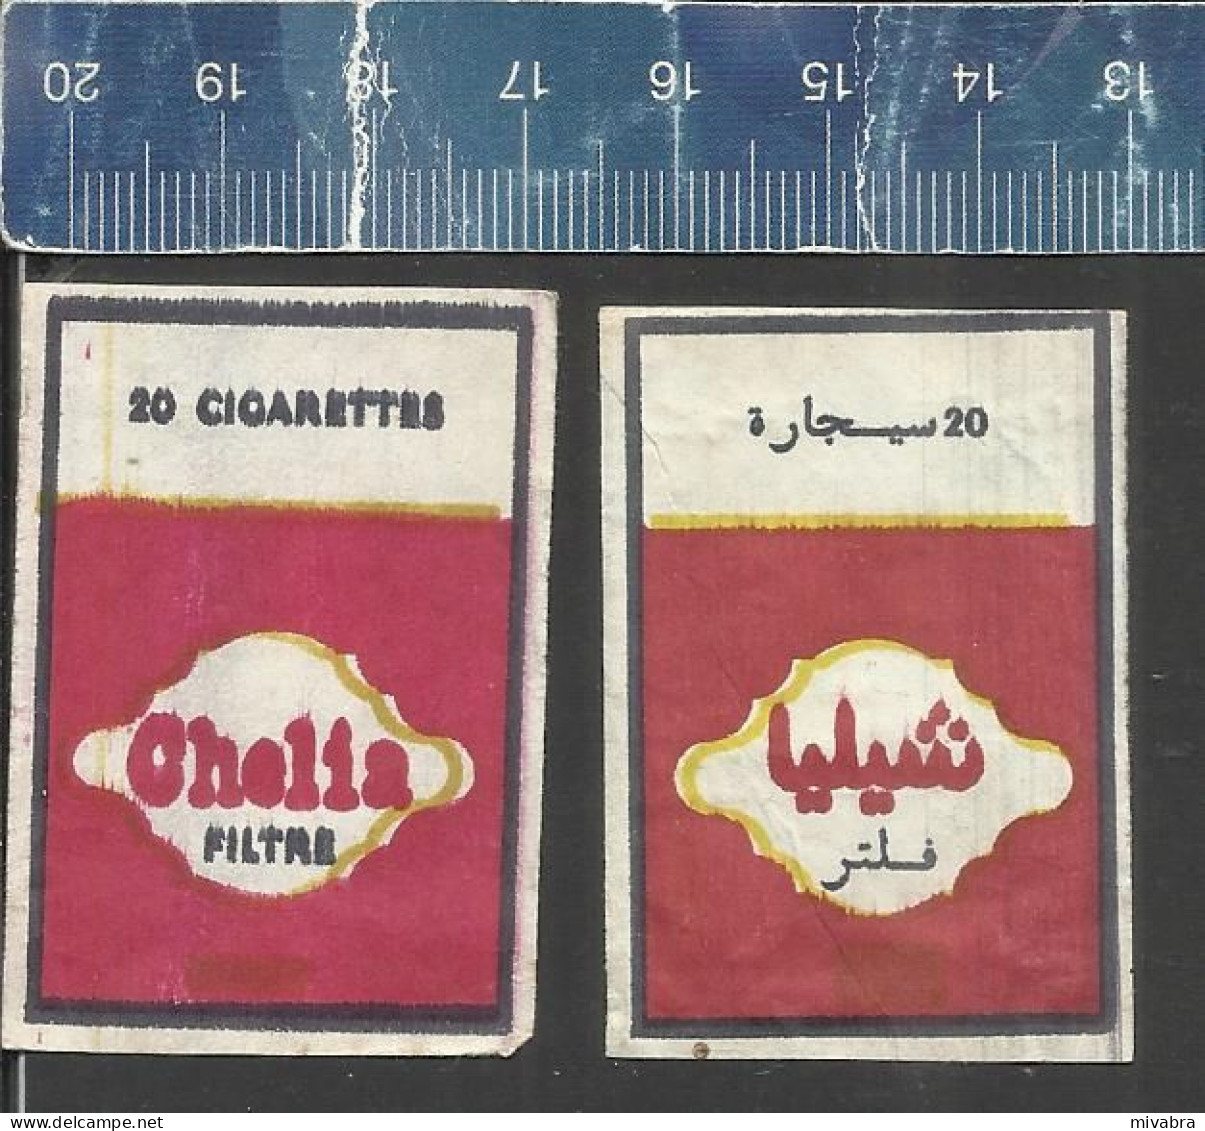 CHELIA FILTRE ( CIGARETTES SIGAETTEN ) - OLD MATCHBOX LABELS  ALGERIA - Zündholzschachteletiketten